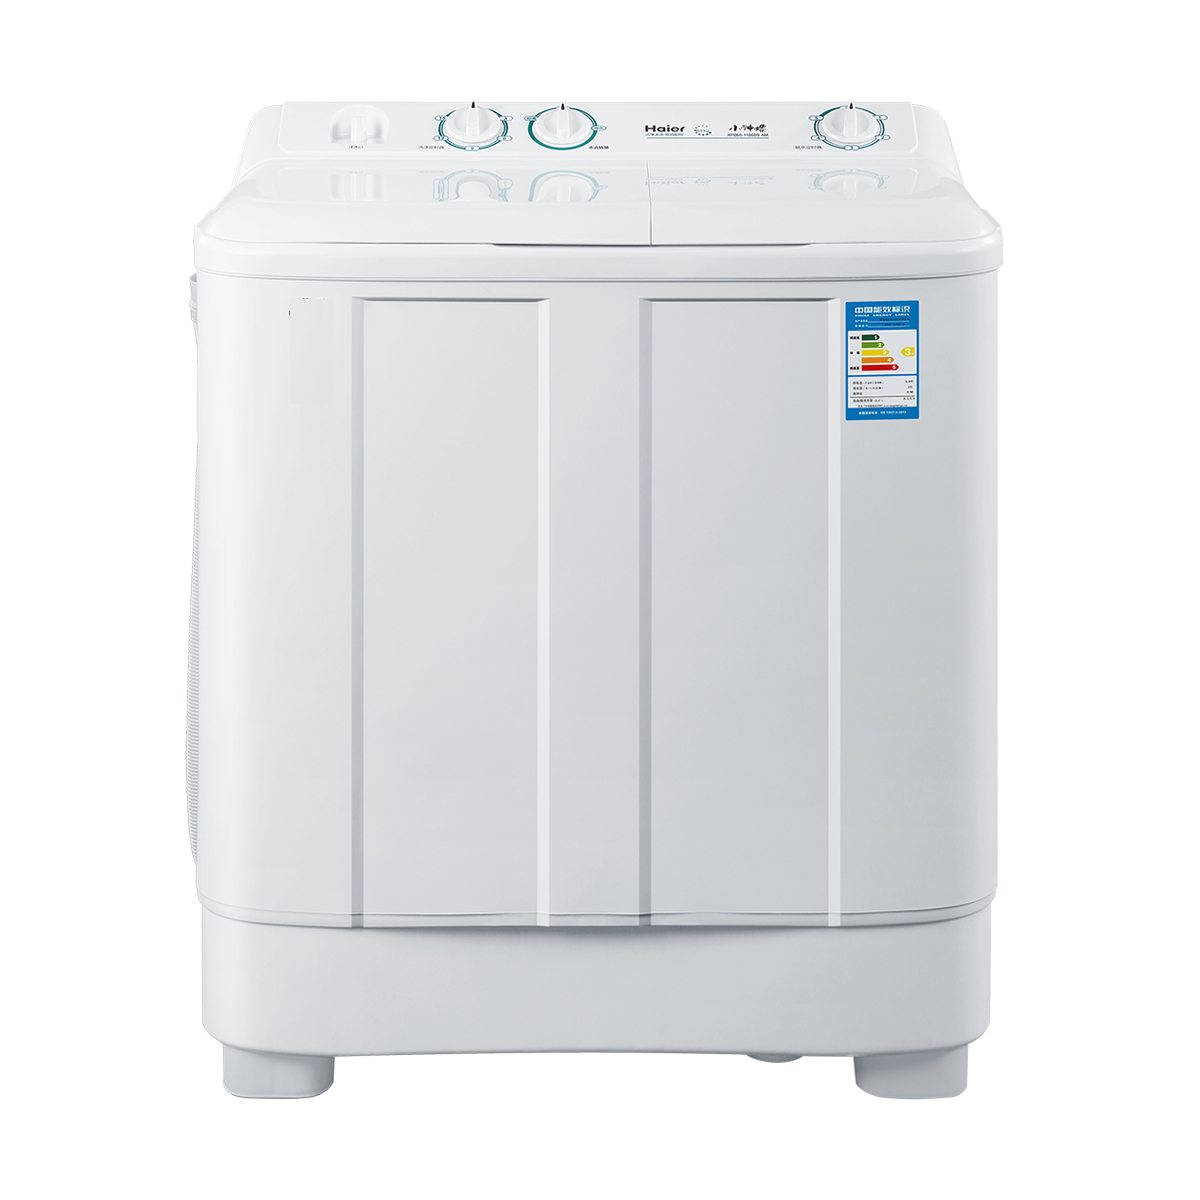 海尔Haier洗衣机 XPB65-1186BS(AM) 说明书